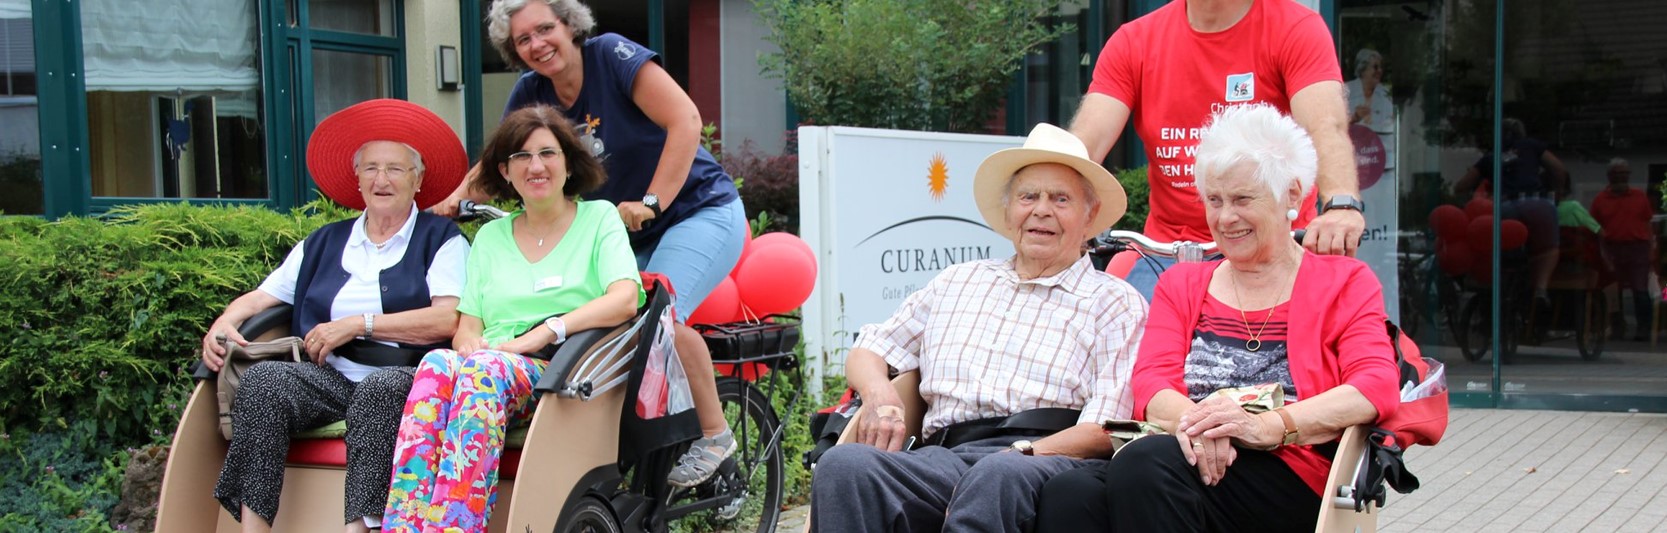 Rikscha fahren für Senioren